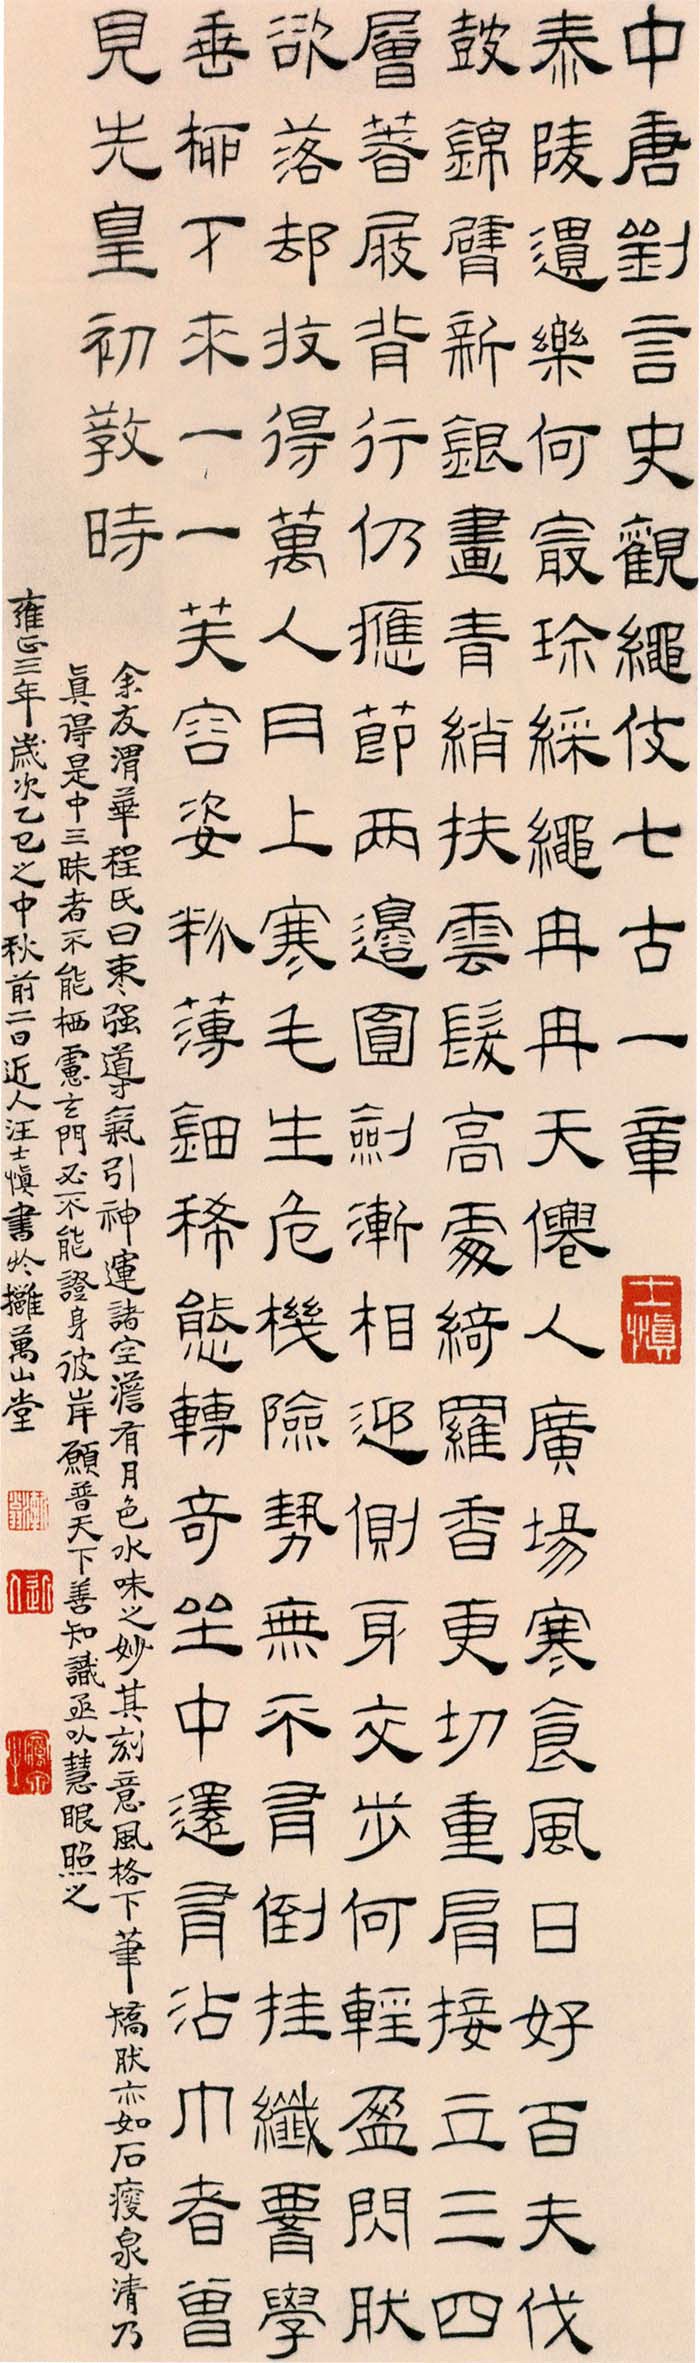 汪士慎《隶书观绳伎七言古诗轴》-北京故宫博物院藏(图1)